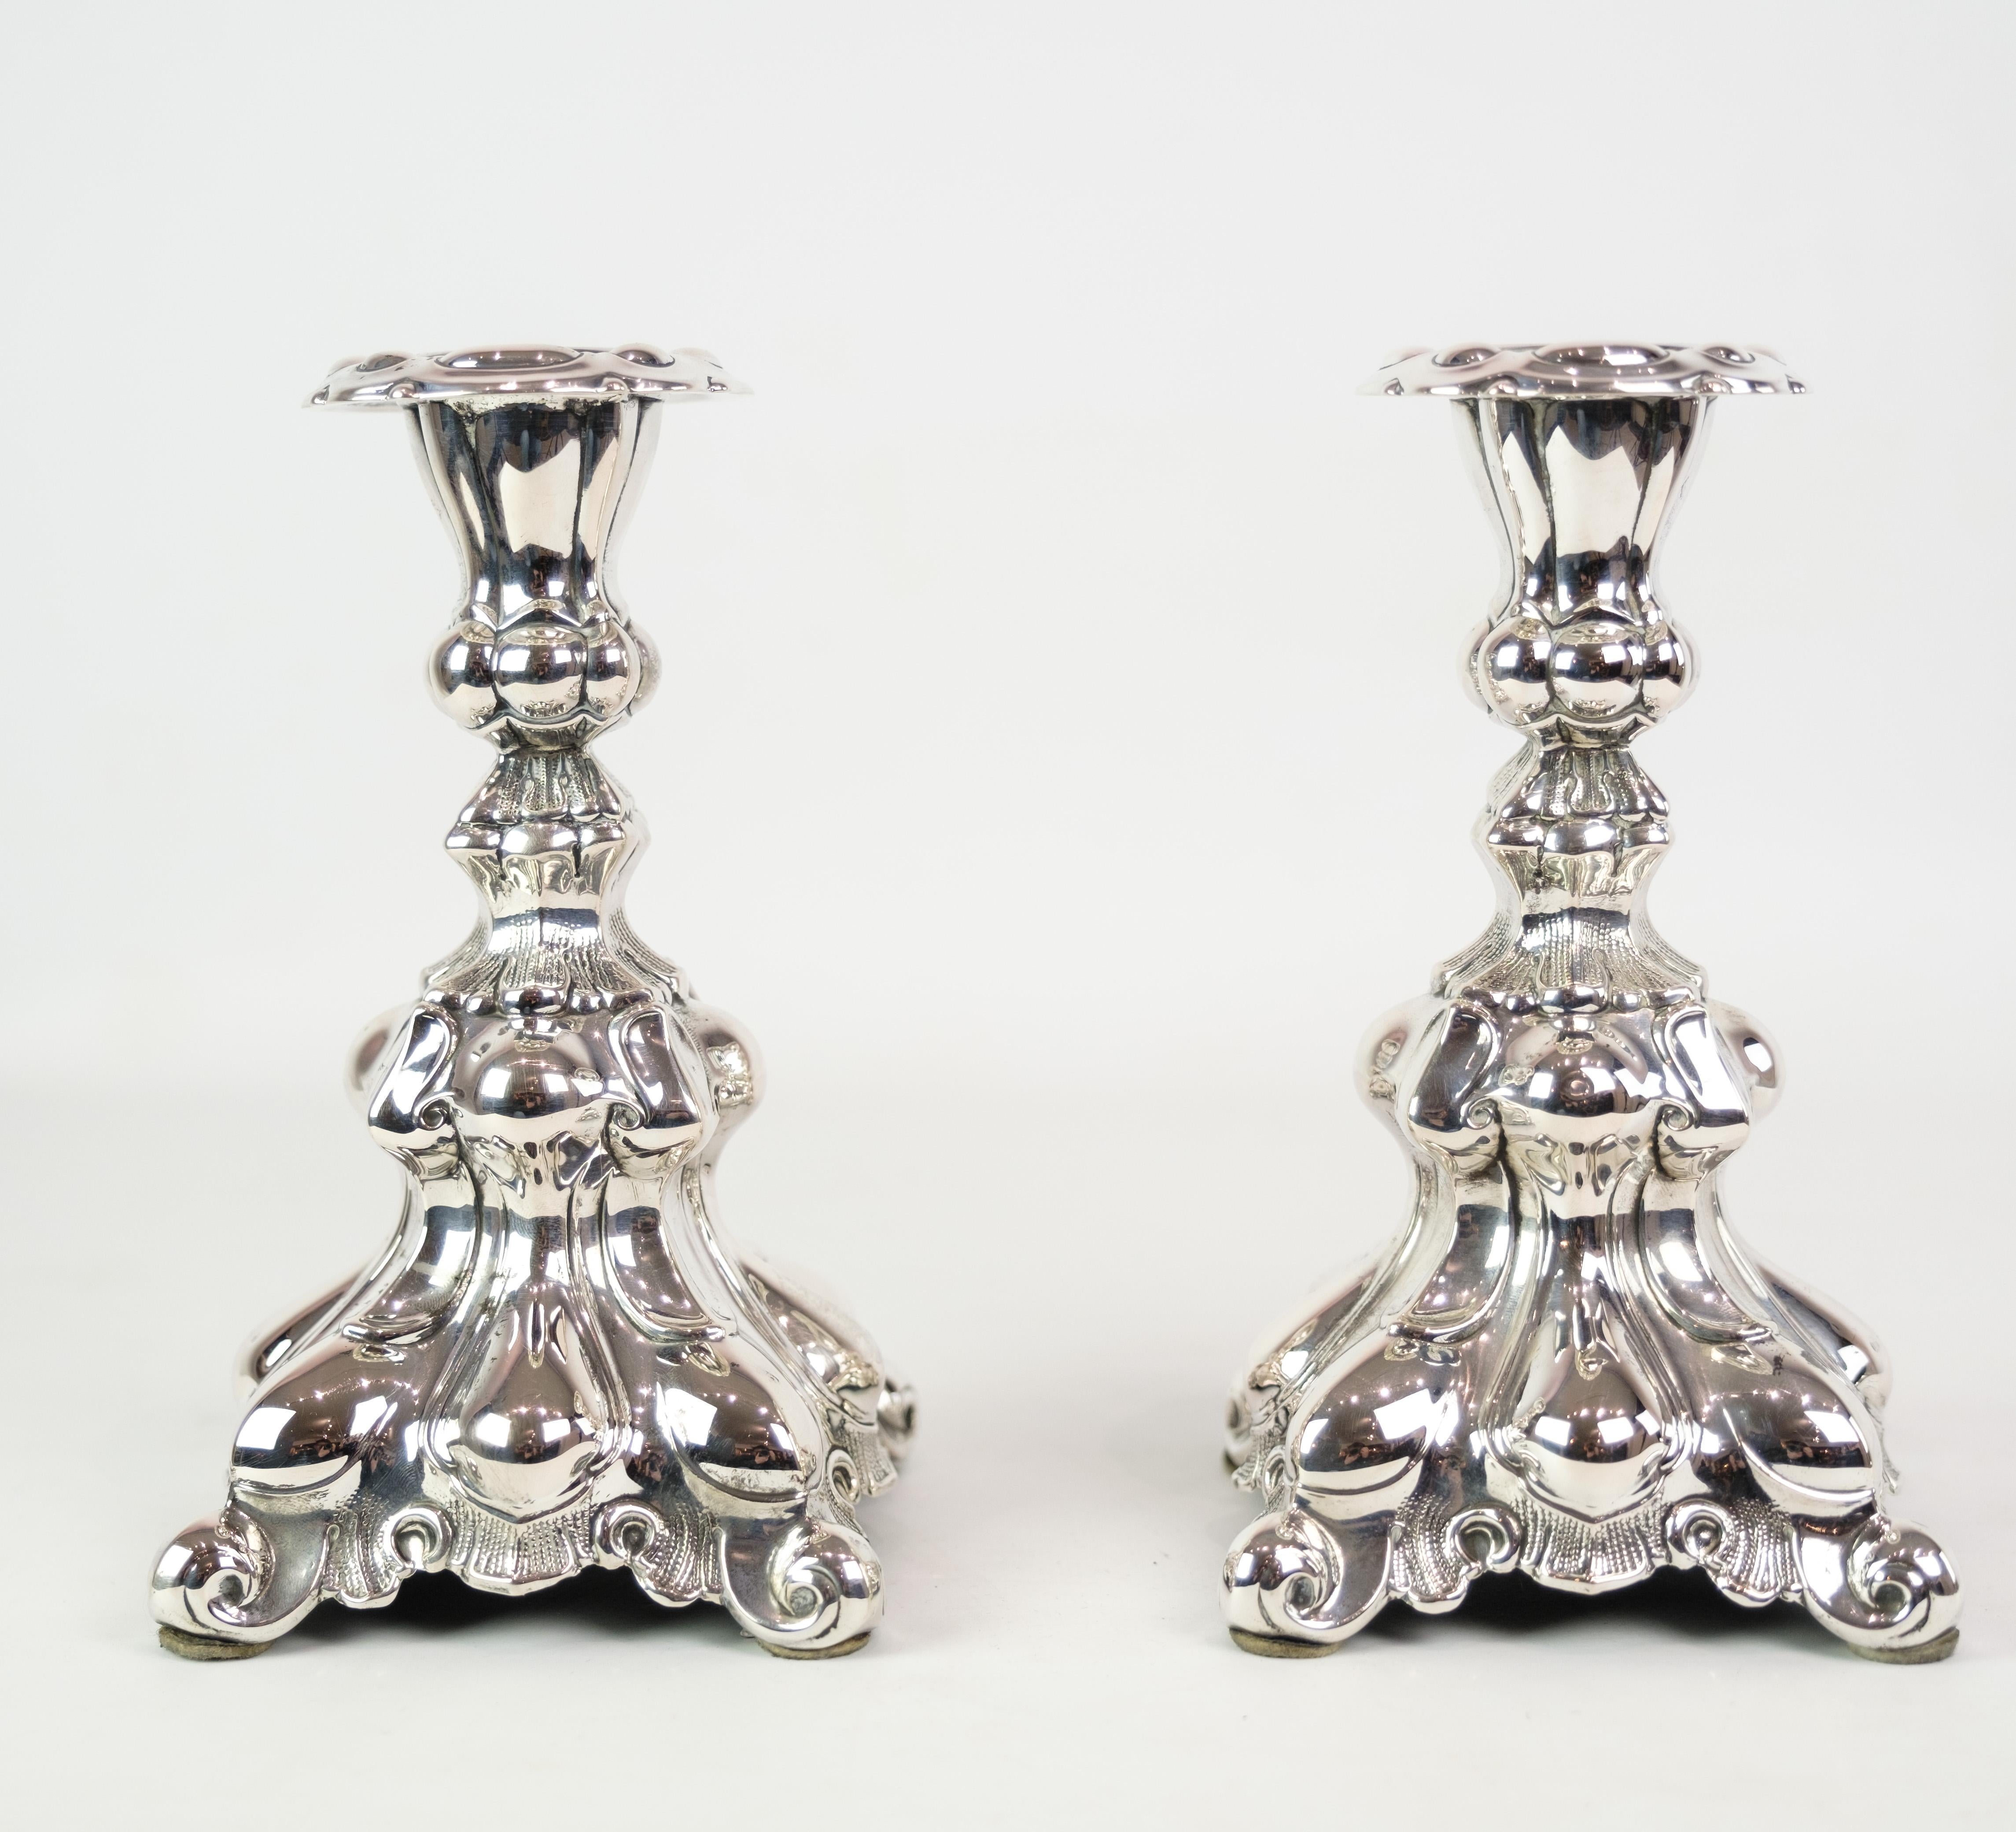 Paire de chandeliers en argent véritable de style rococo, datant des années 1930. Ces chandeliers exsudent l'opulence et les détails complexes caractéristiques de l'ère rococo, ajoutant une touche de grandeur à n'importe quel décor. Grâce à leur